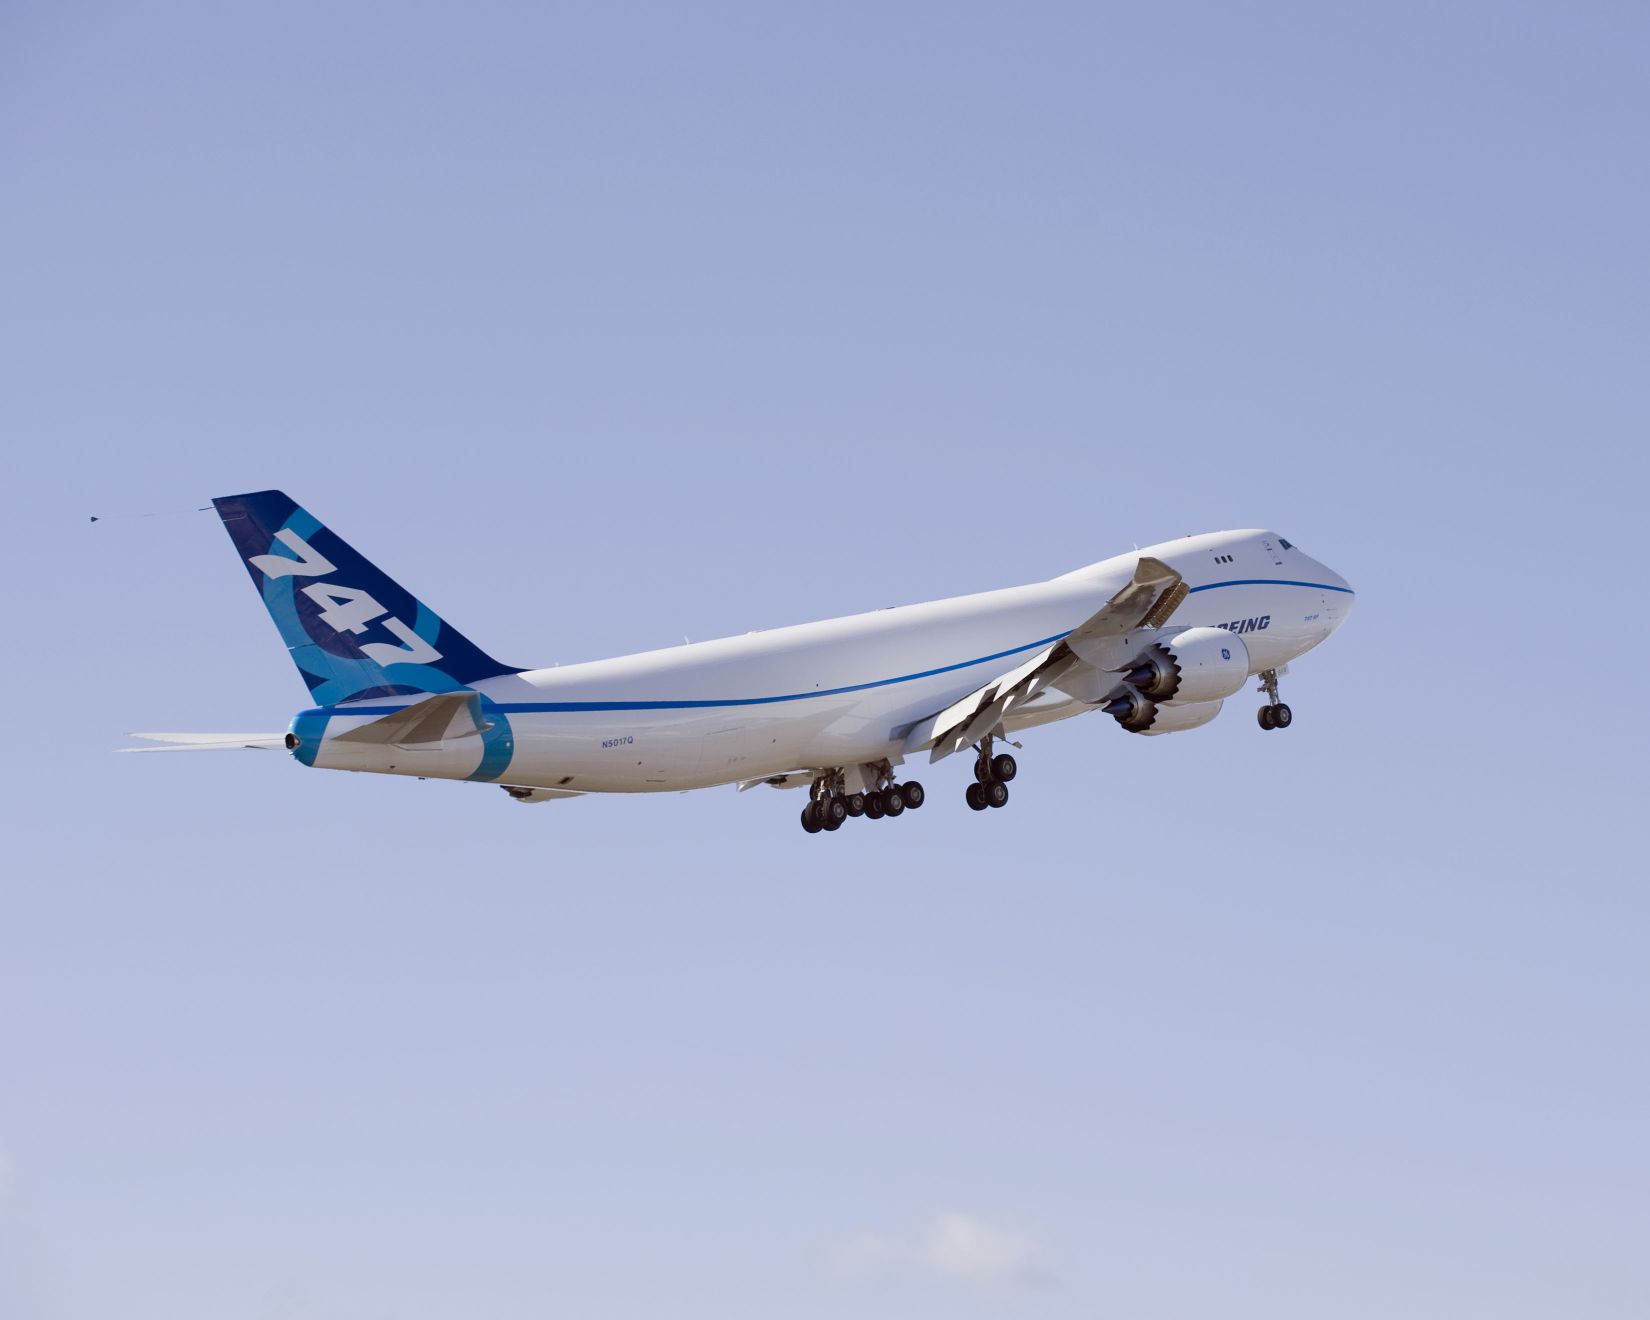 A legnagyobb a legdrágább: 747-8F, azaz a cargo-változat